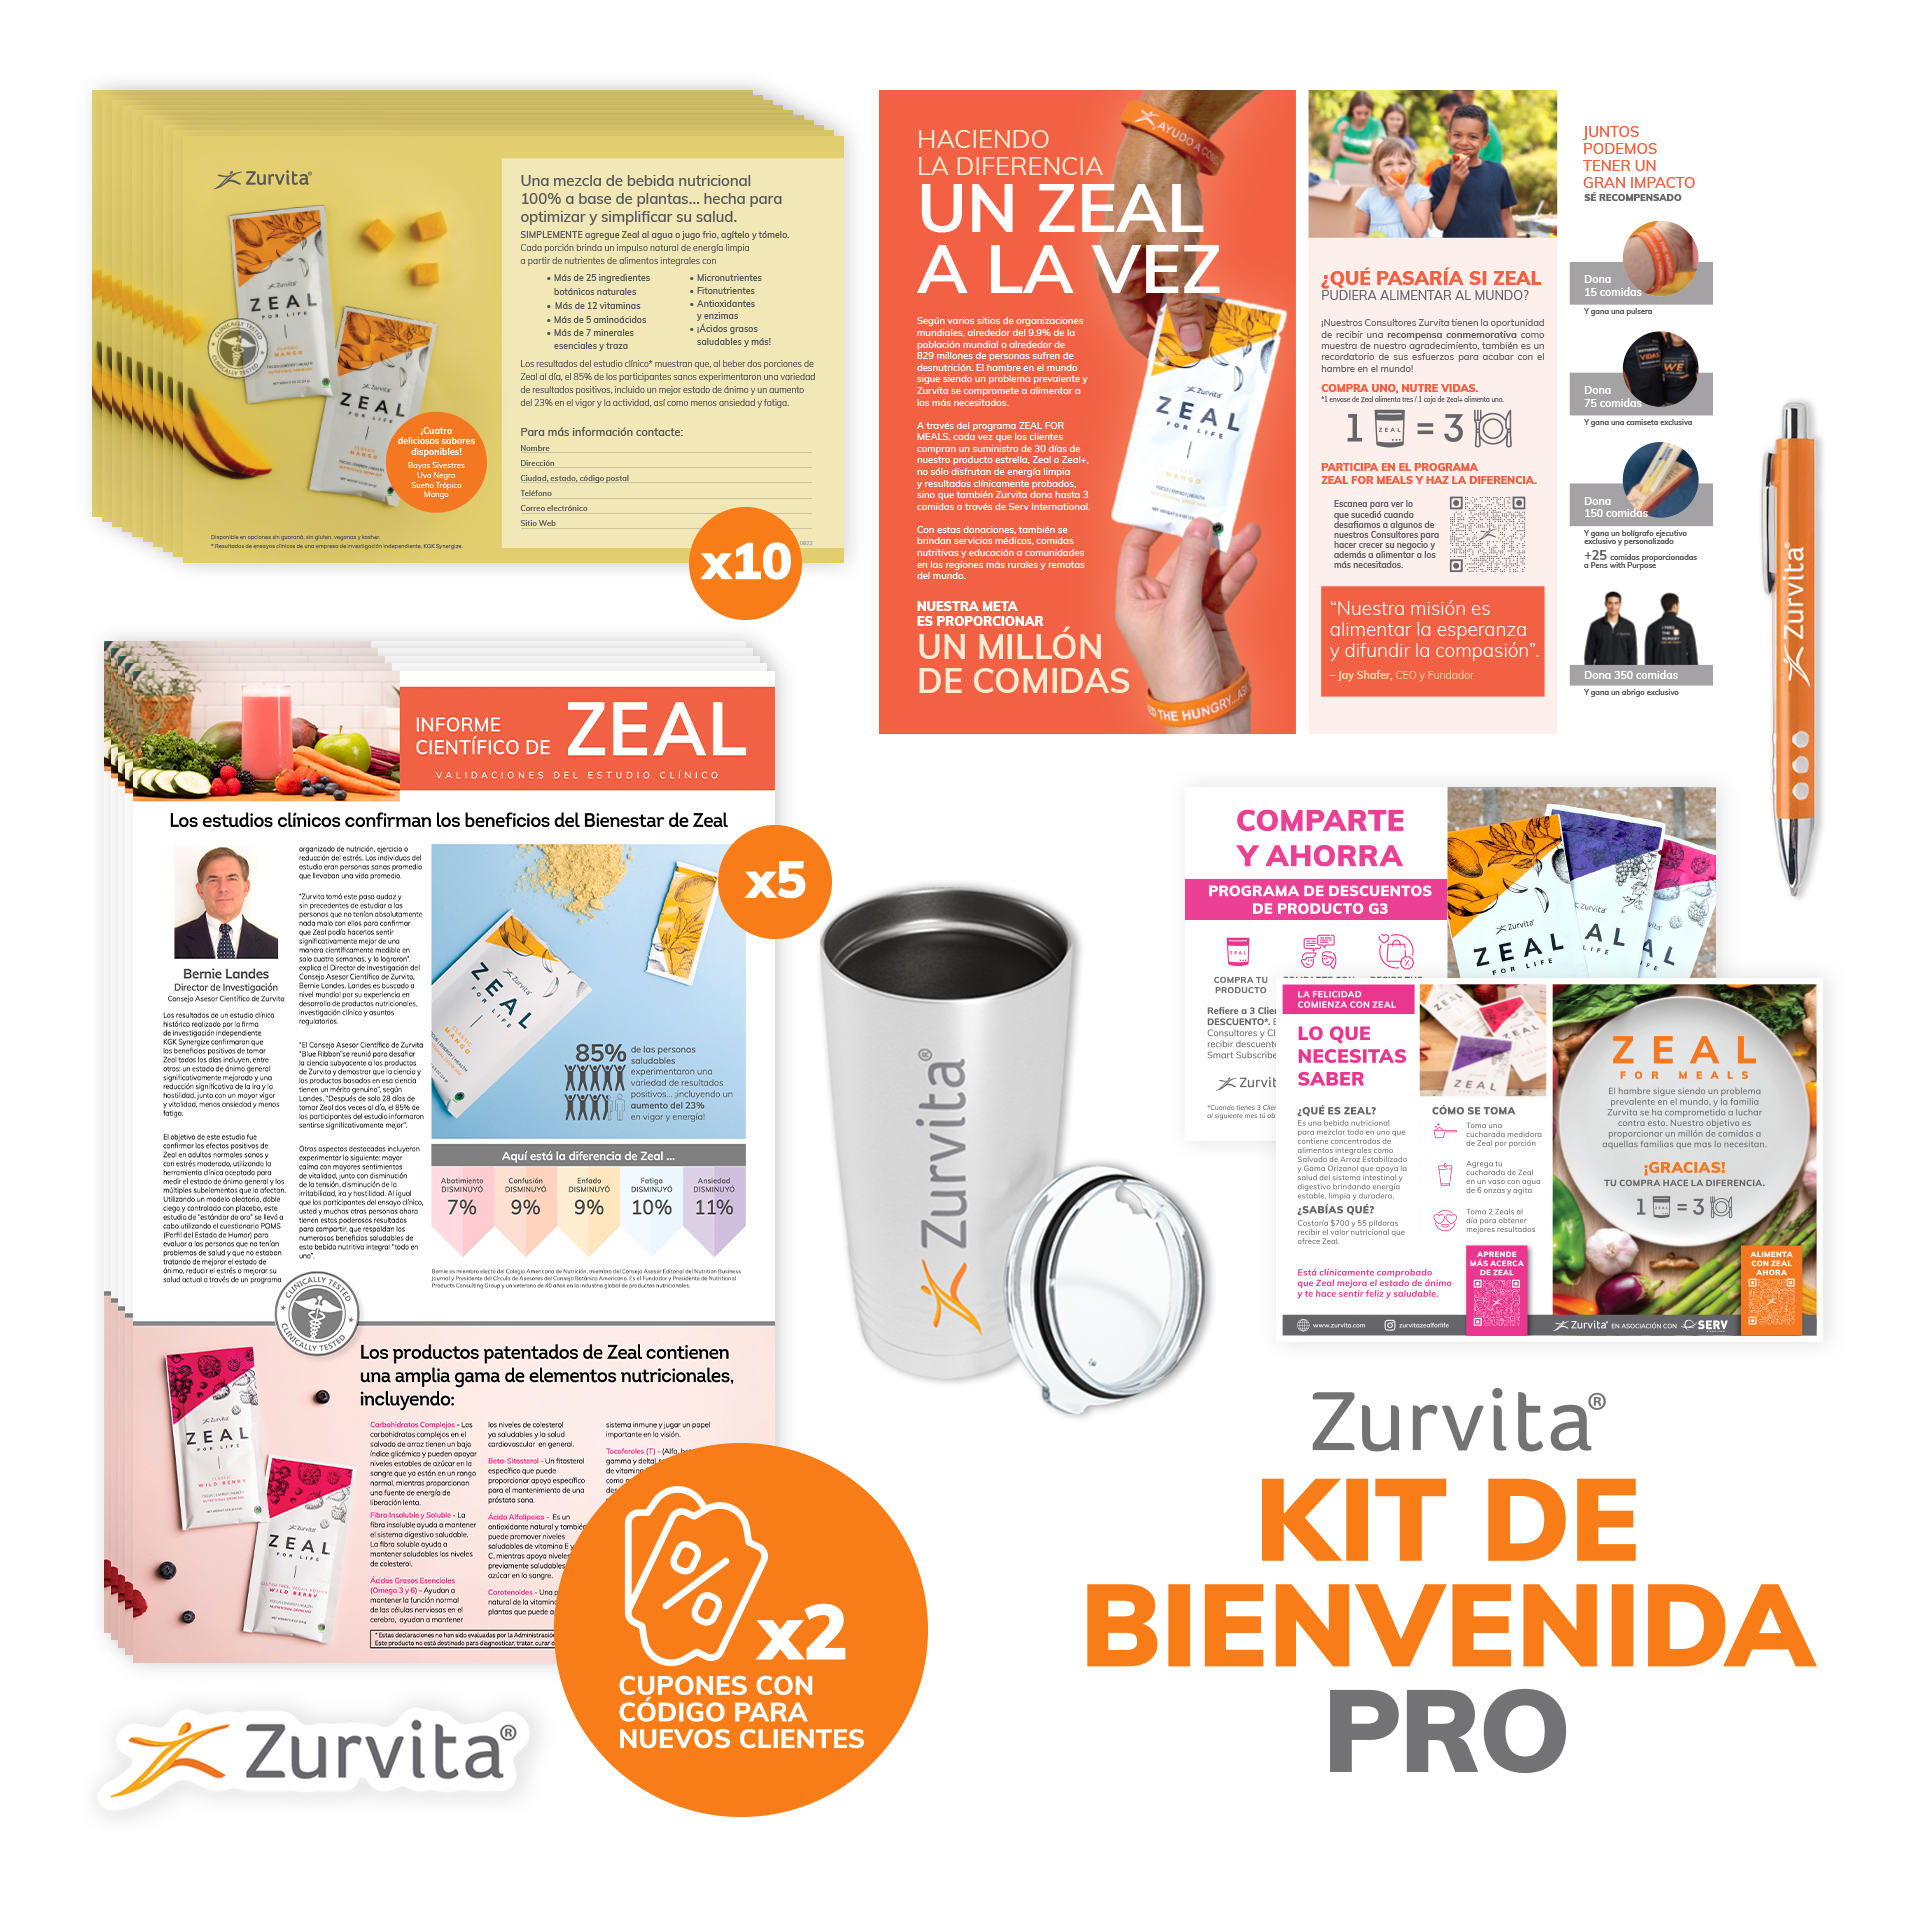 El Kit de Bienvenida PRO de Zurvita (incluye el Kit Digital 